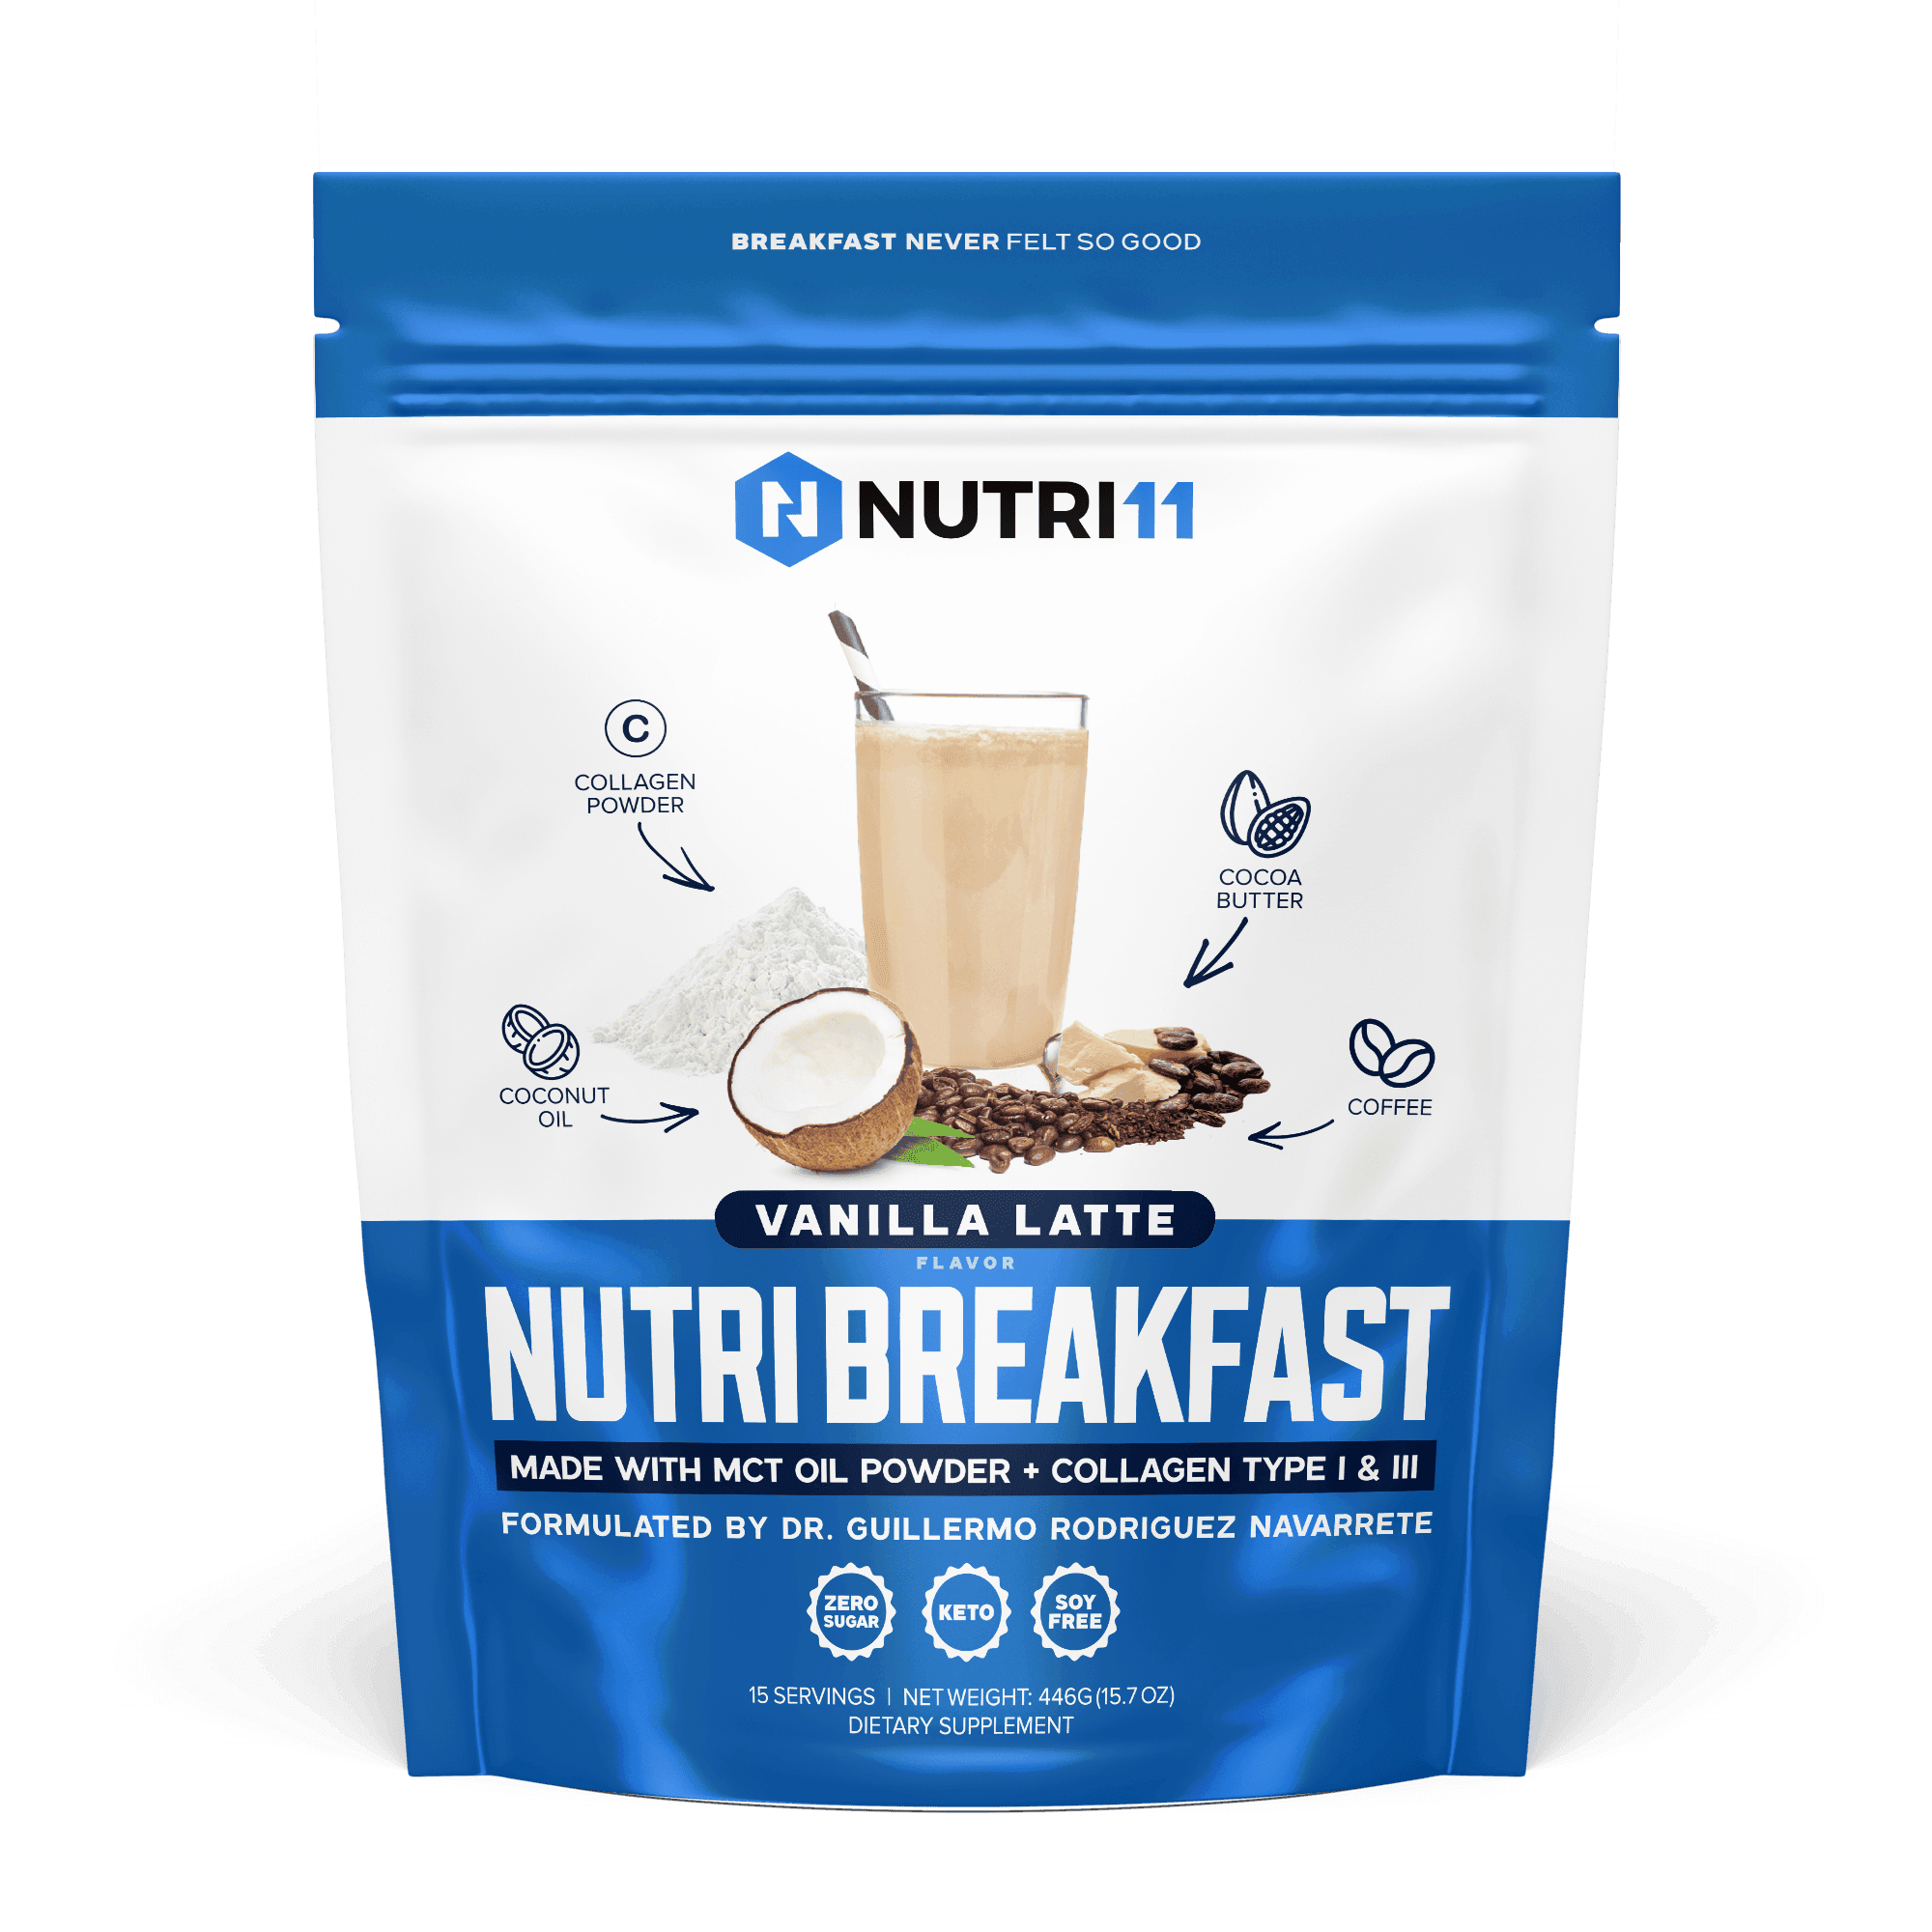 NutriBreakfast Vanilla Latte - Nutri11